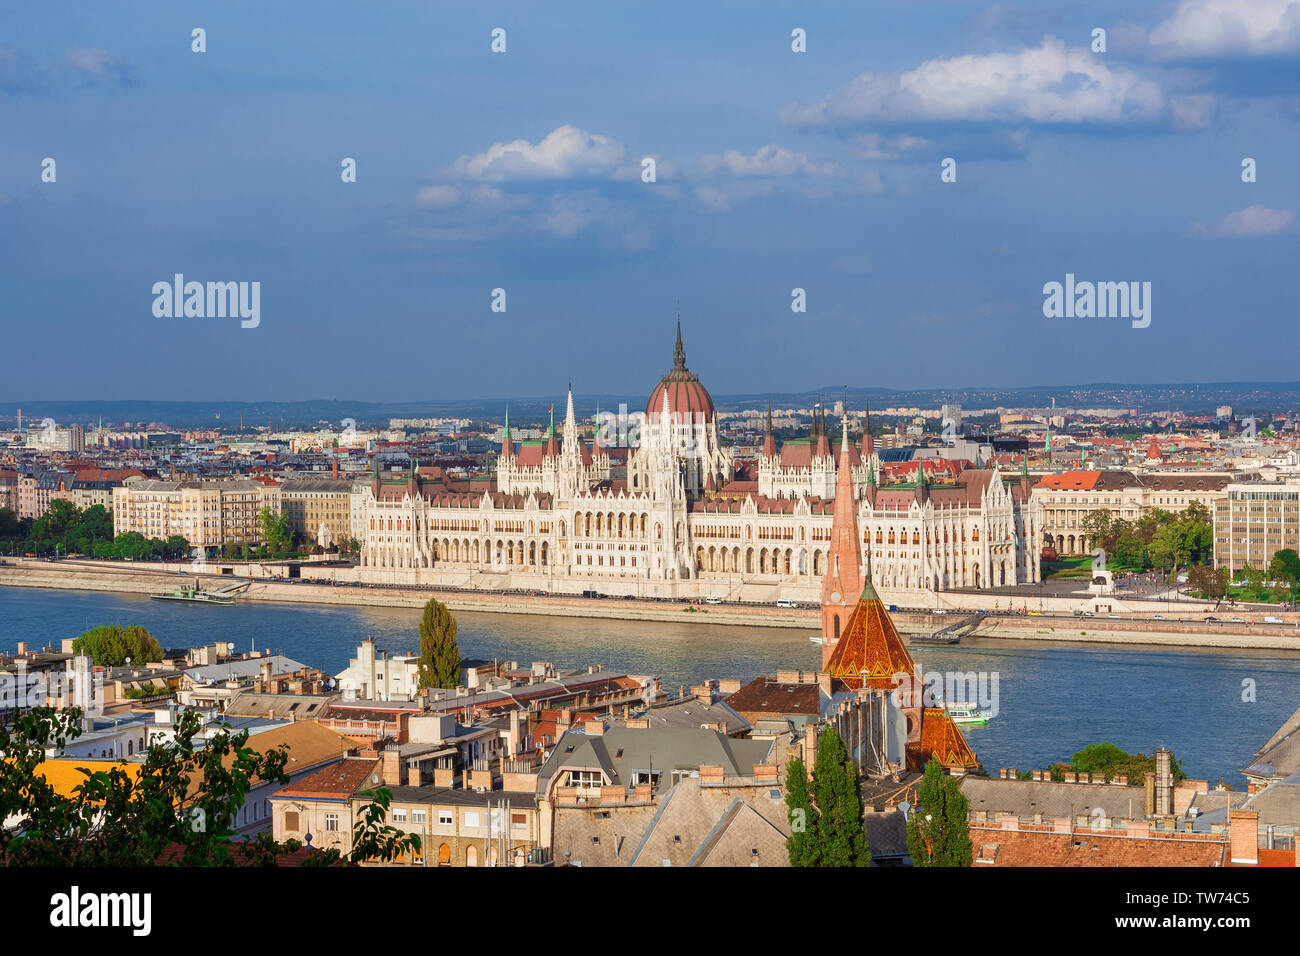 Vista bella di Budapest centro storico con il famoso parlamento ungherese e il fiume Danubio Foto Stock